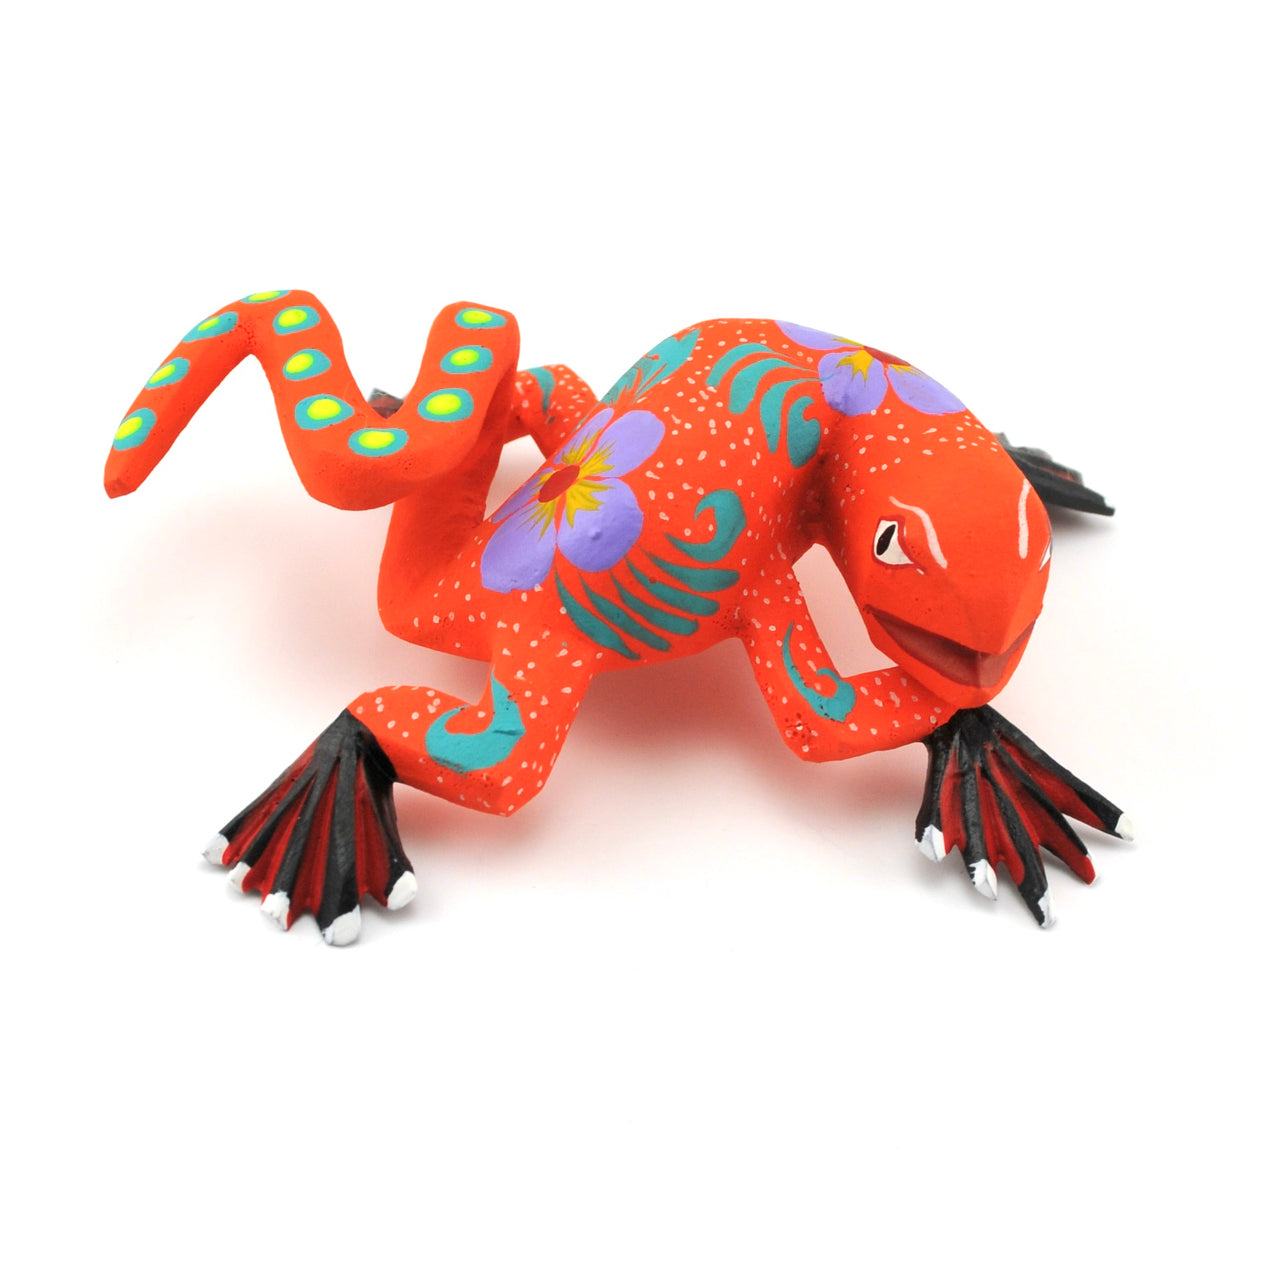 Oaxacan Lizard by Munoz